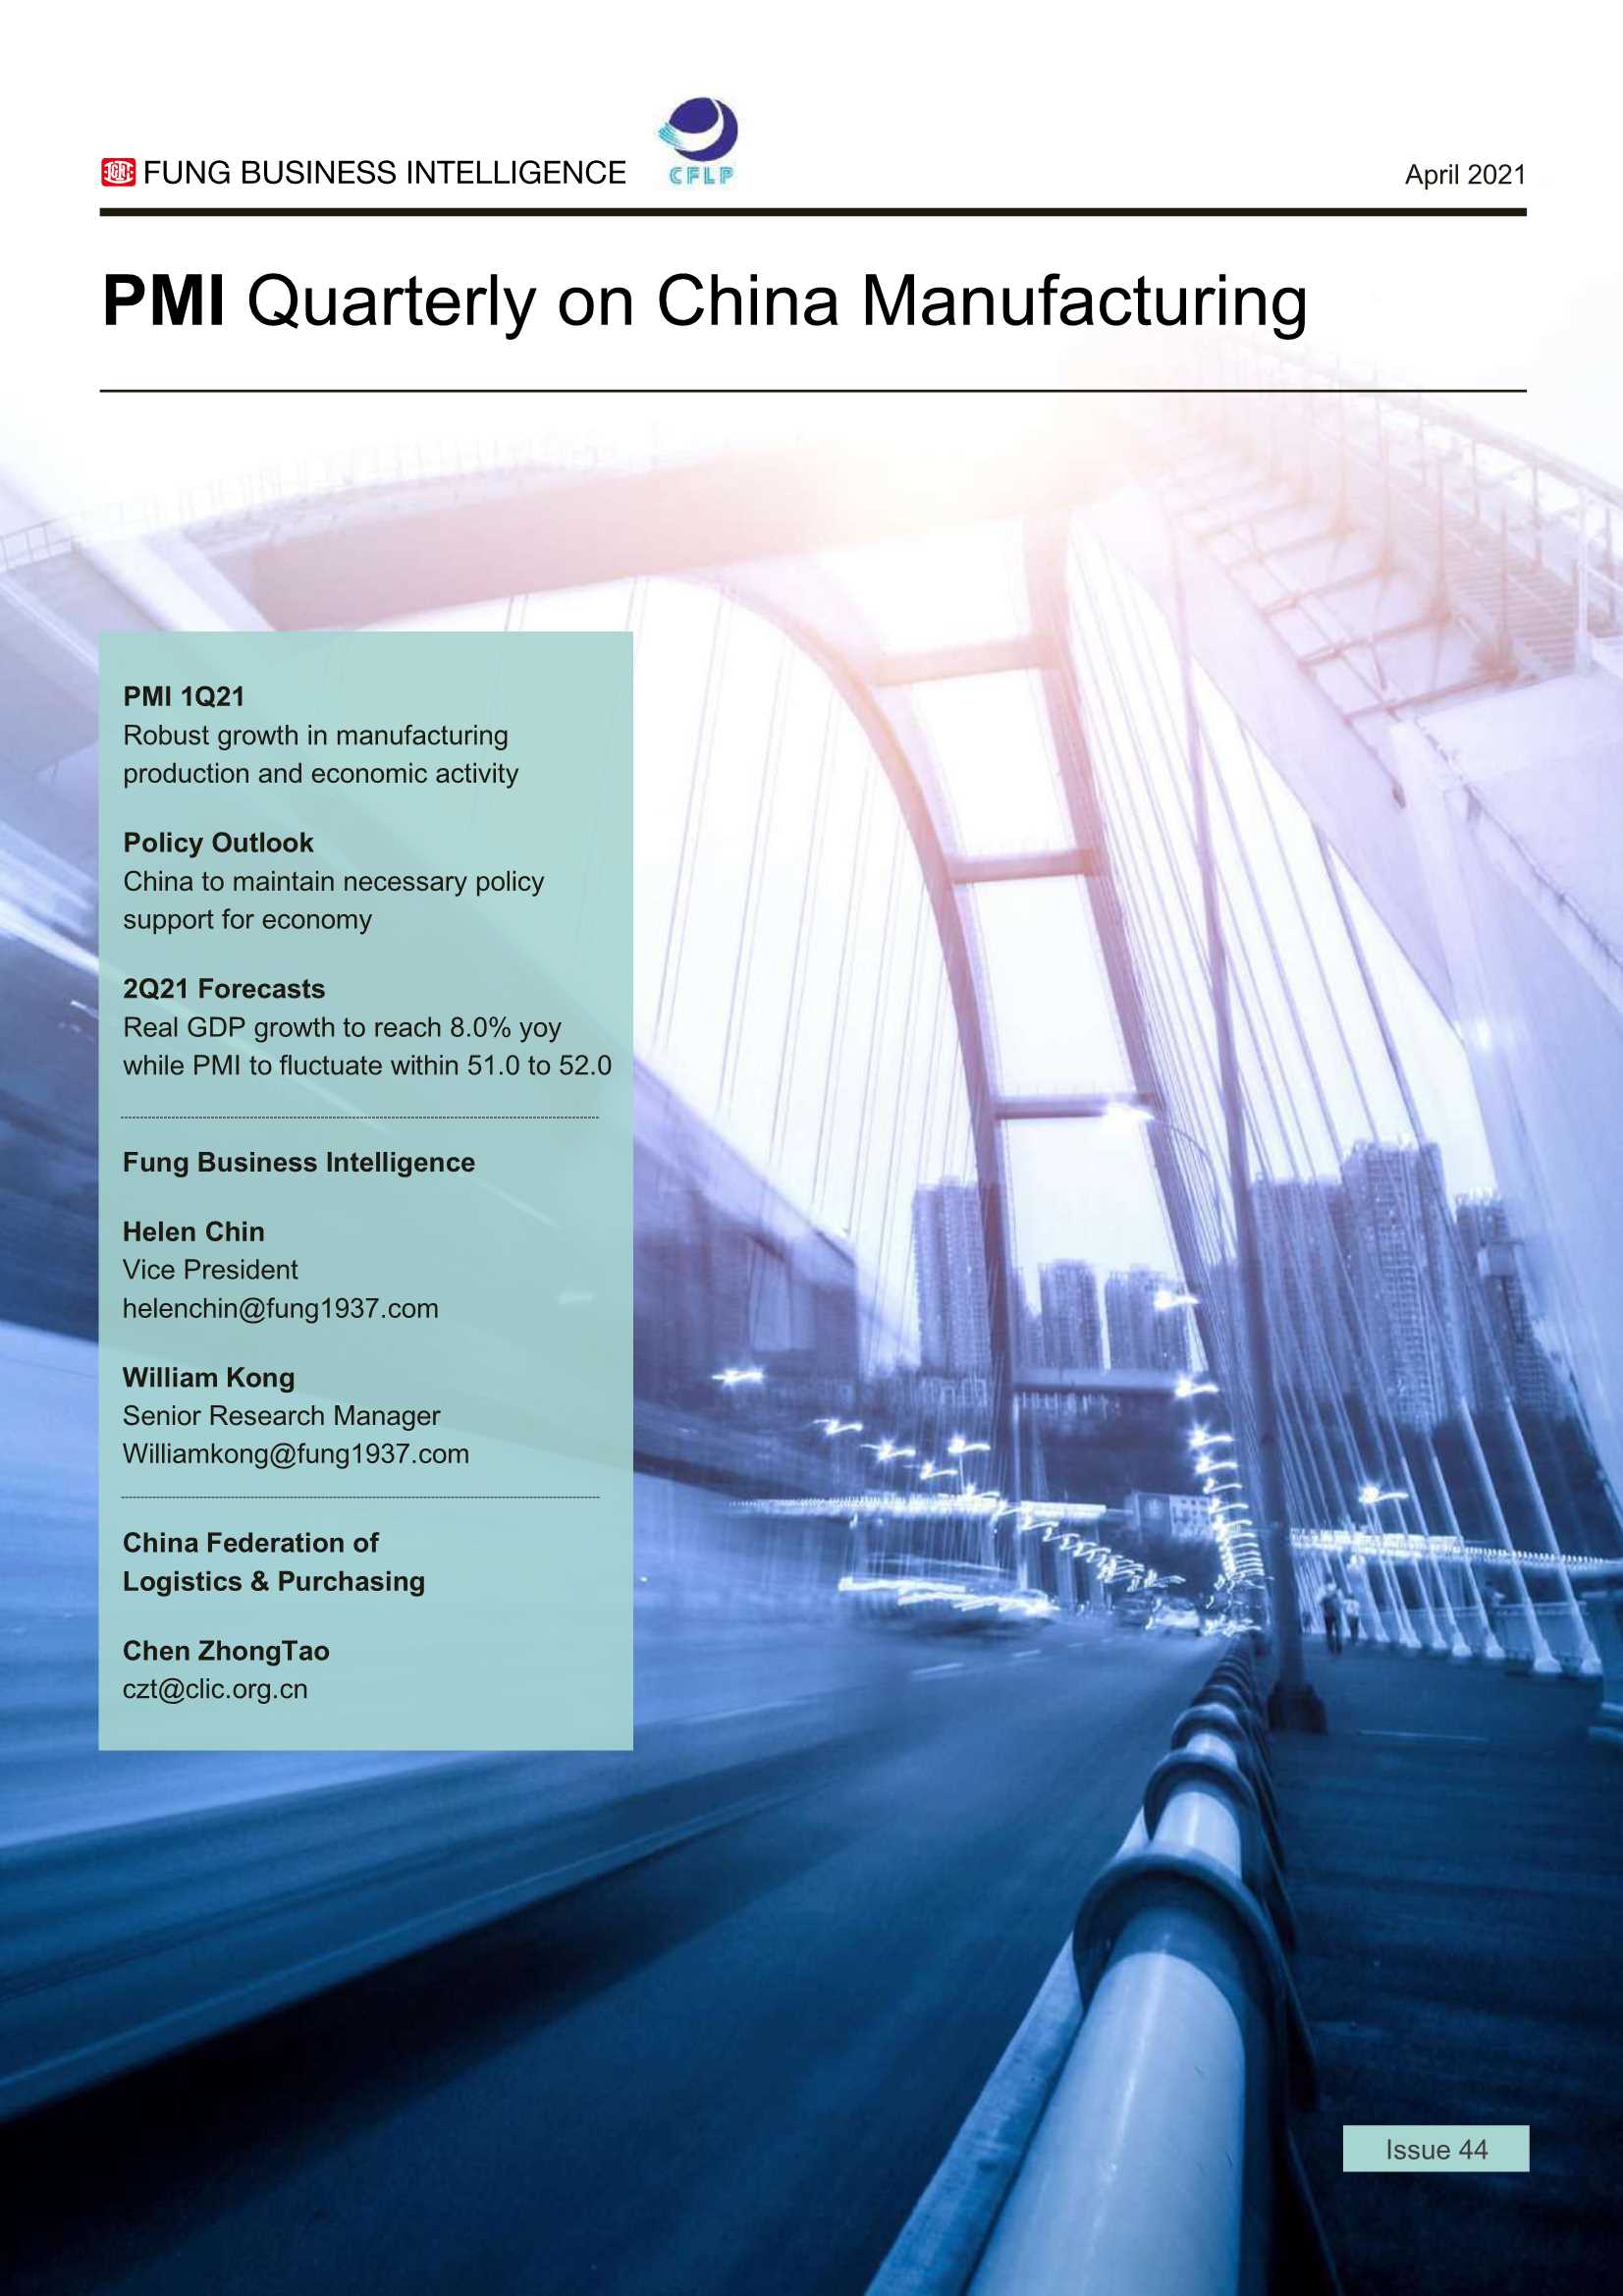 冯氏集团-PMI中国制造业季刊（英文）-2021.04-2021.04-20页